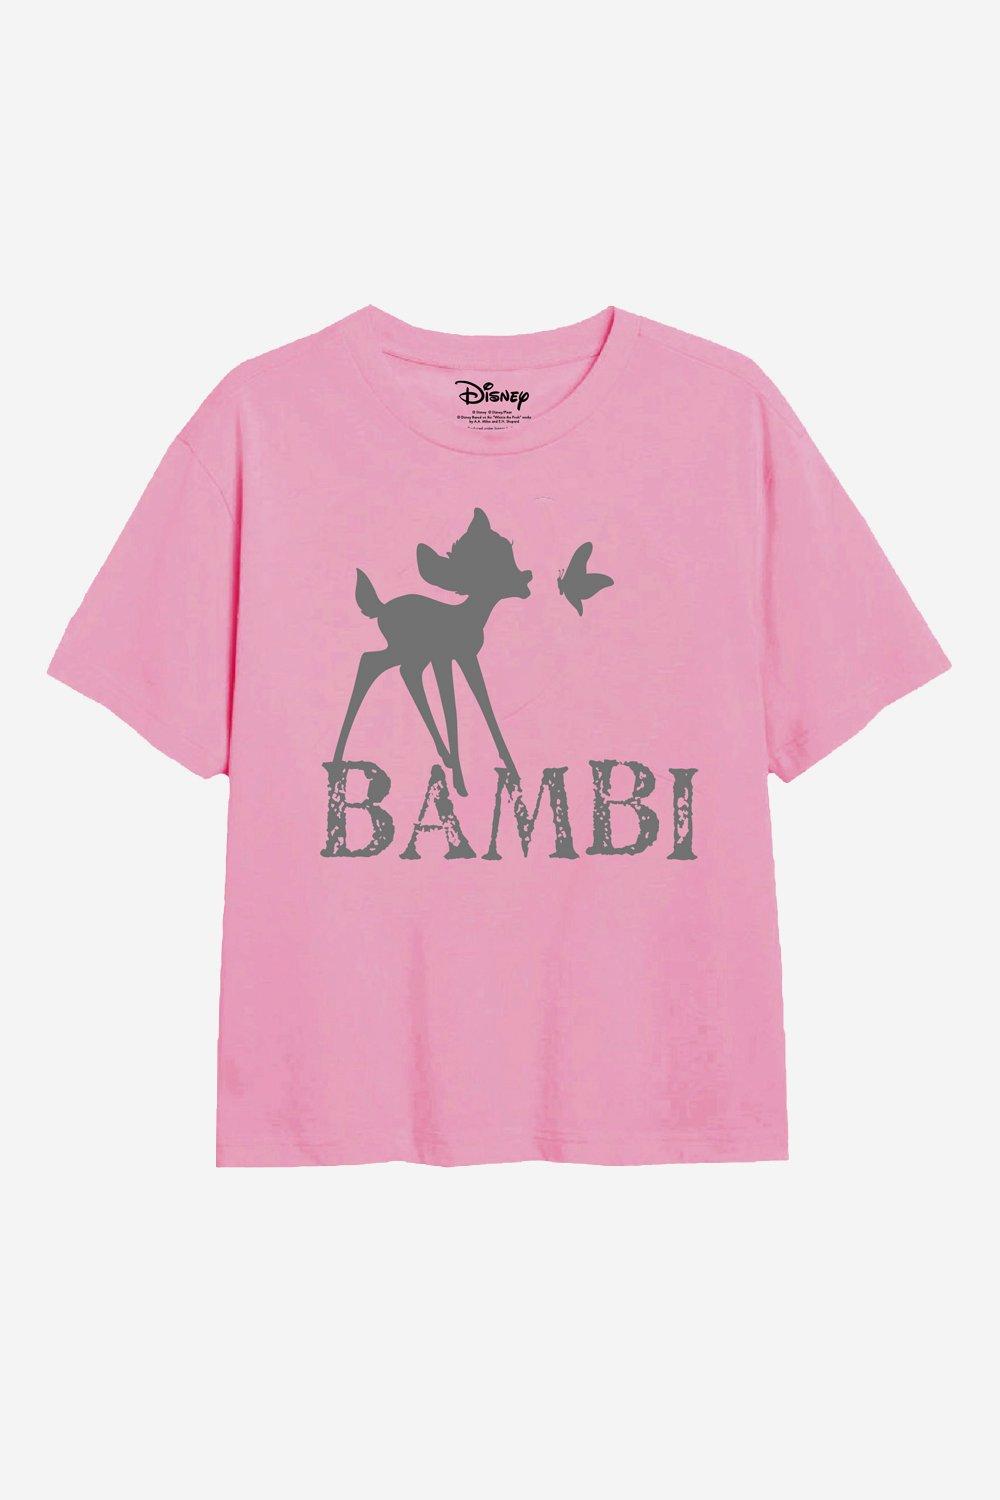 Bambi Silhouette T Shirt